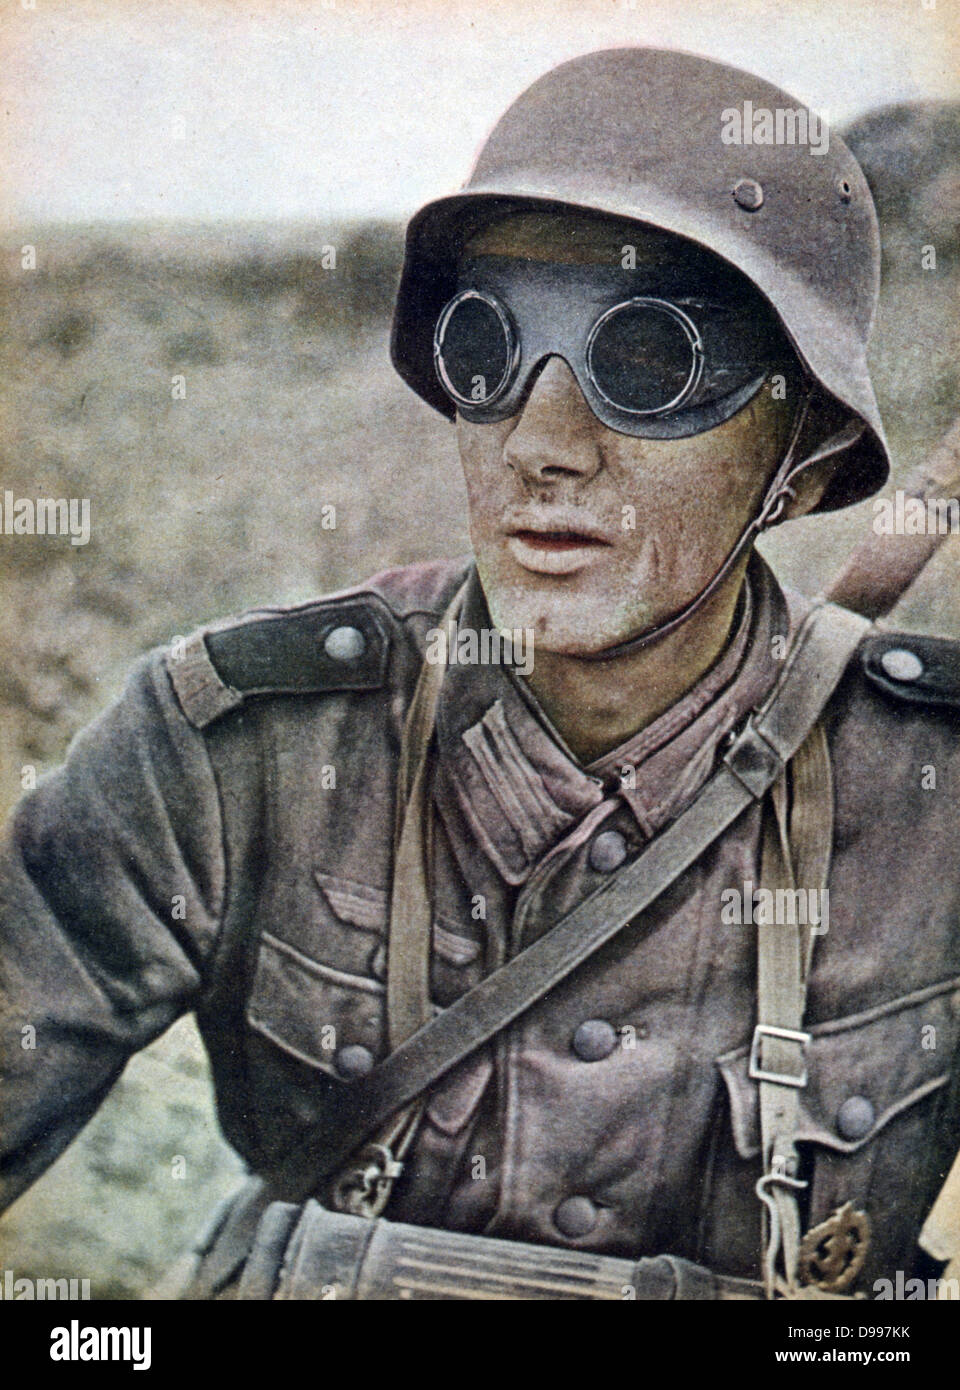 La Seconde Guerre mondiale - Front russe : moto allemande de l'estafette. À partir de 'Signal', la propagande allemande Magazine, septembre 1942. Soldat, militaire, casque, lunettes Banque D'Images